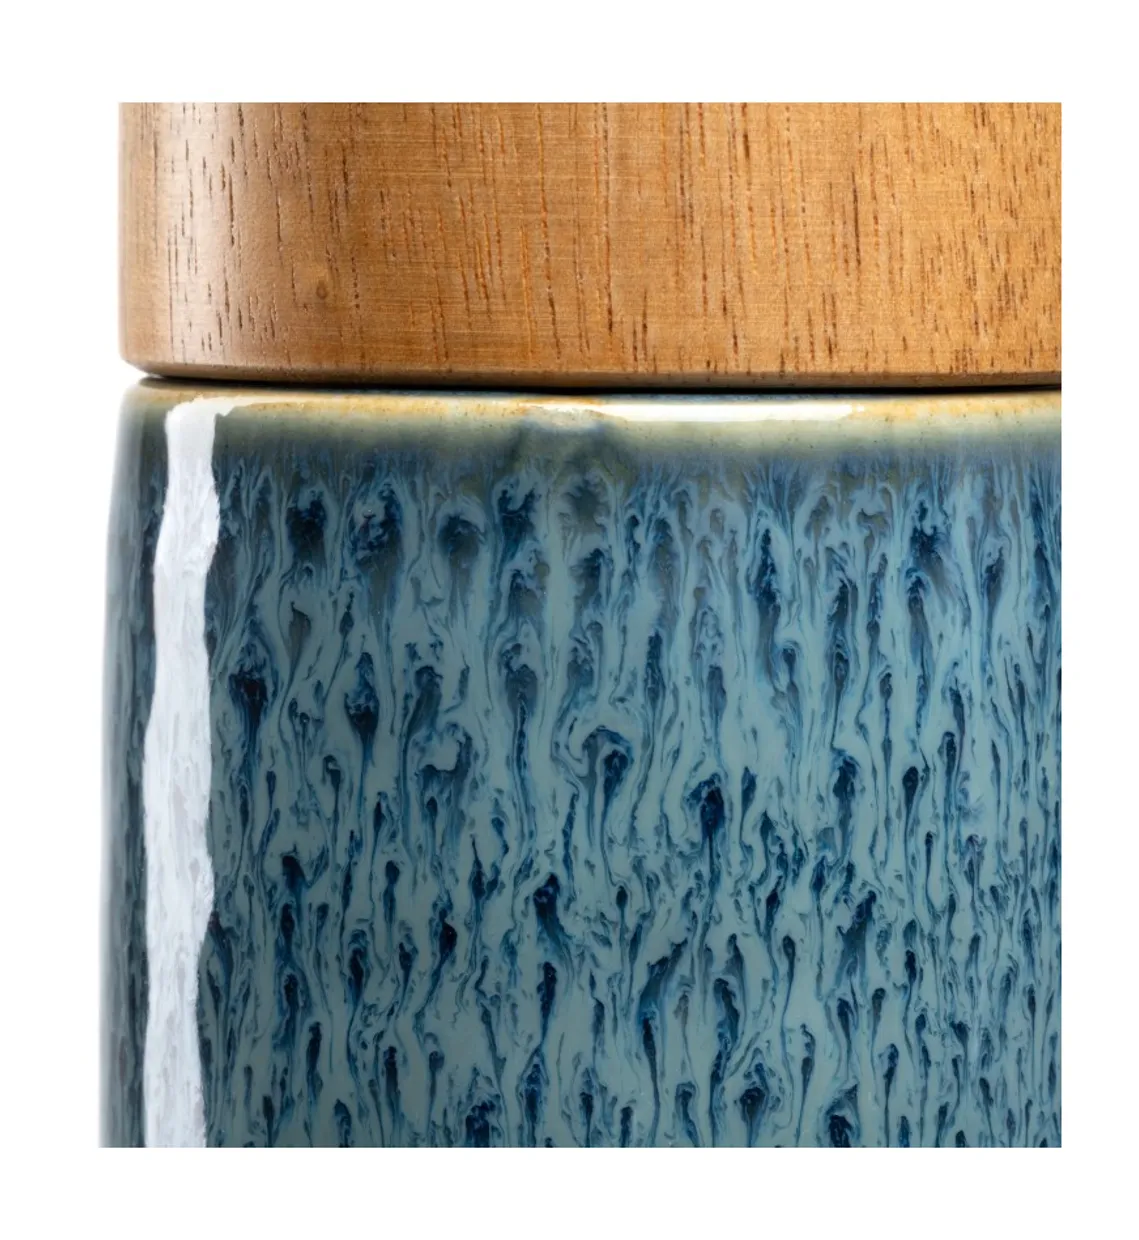 Kruidenmolen 17 cm blauw - Matera